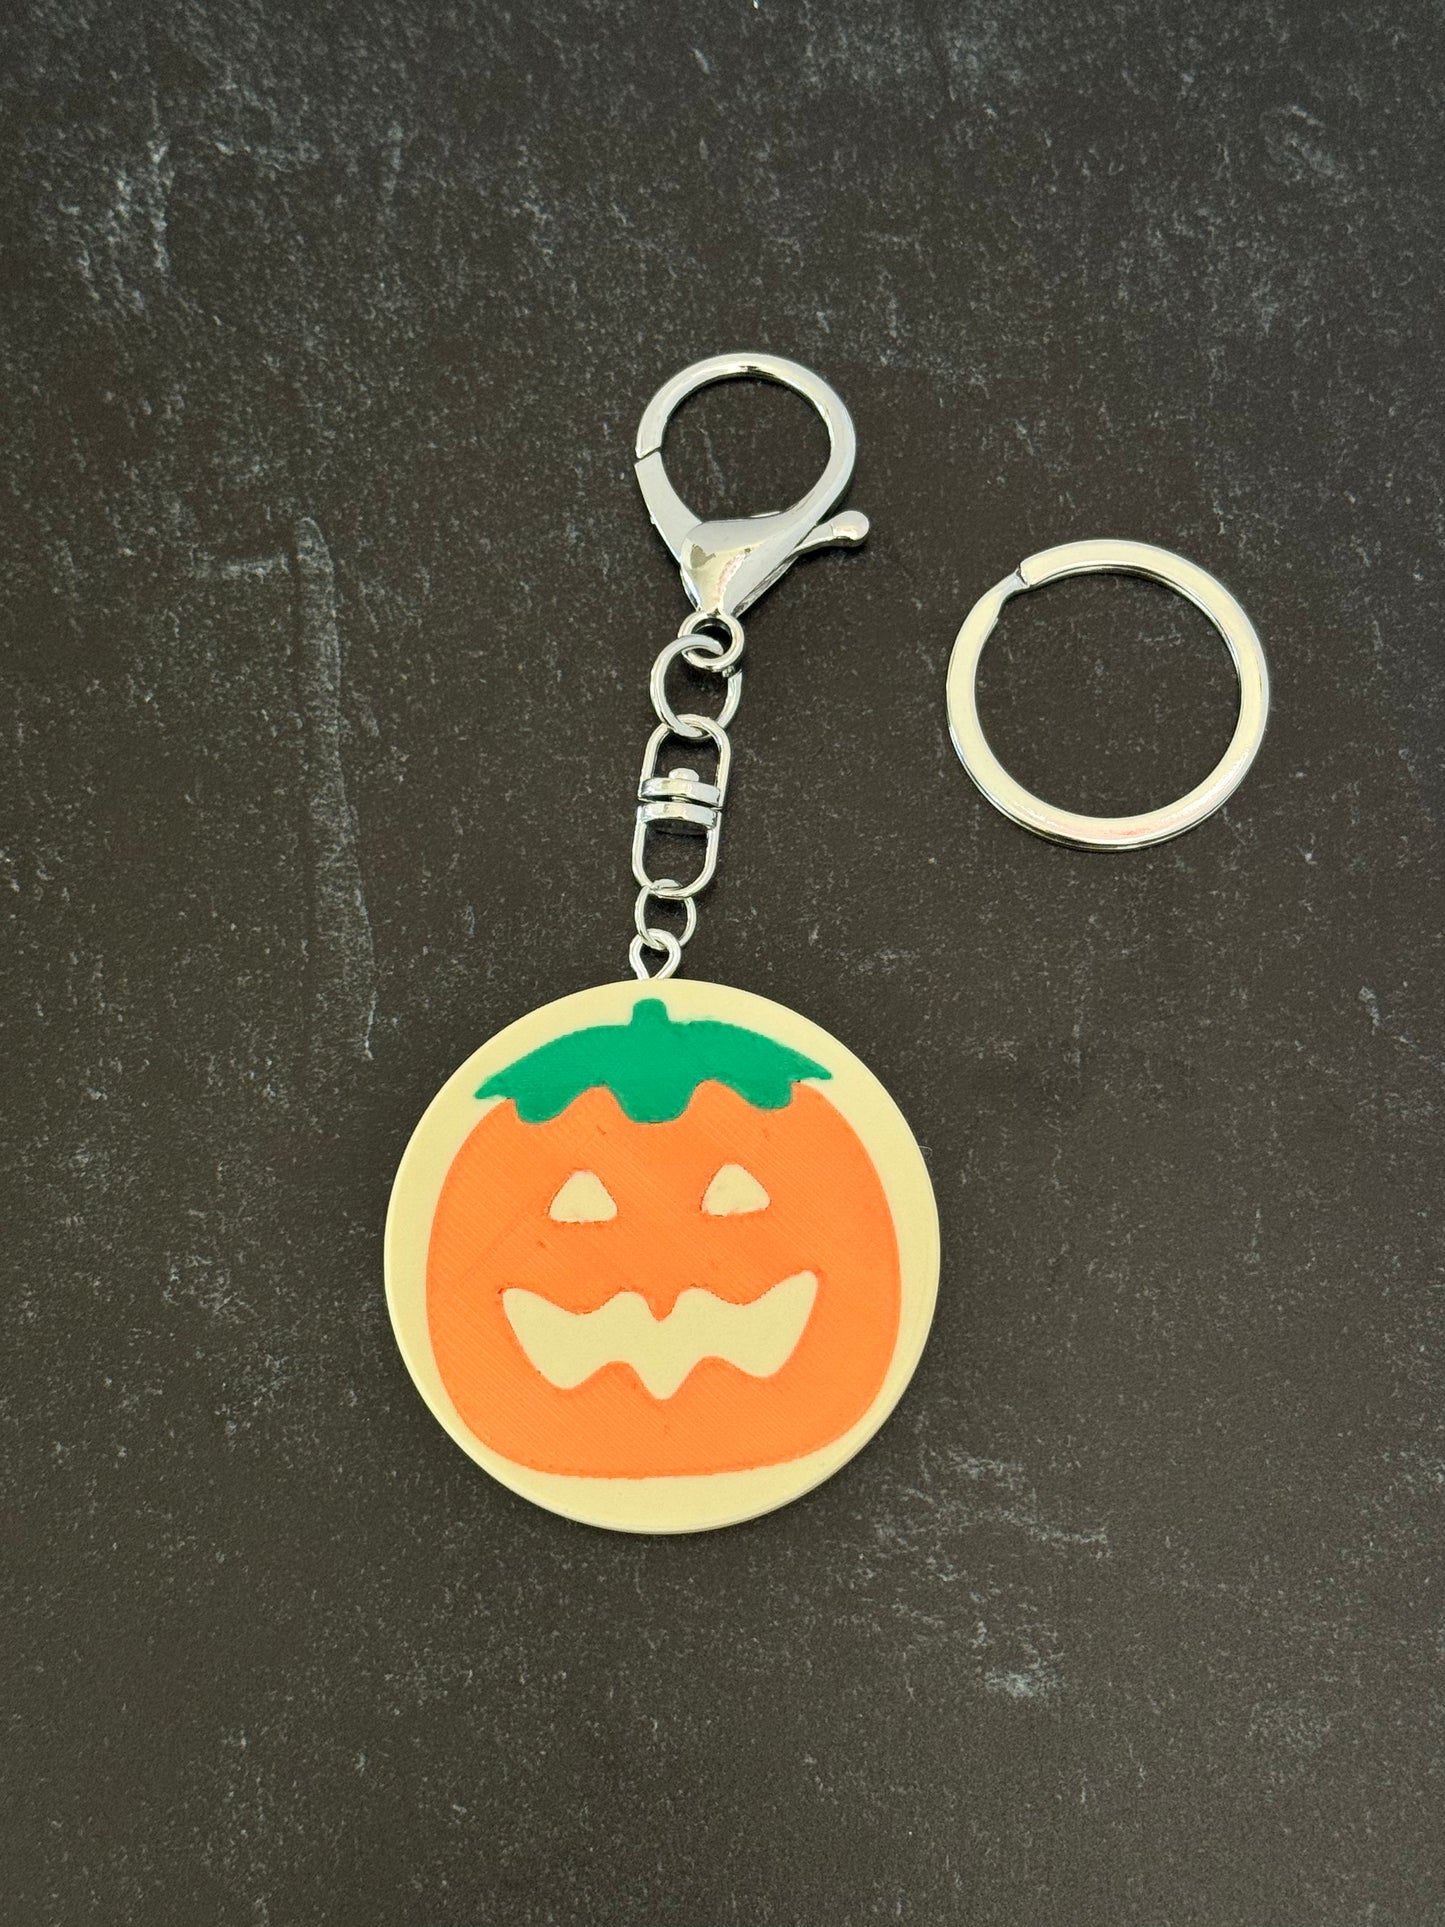 Cozy Cookie Keychain - Pumpkin